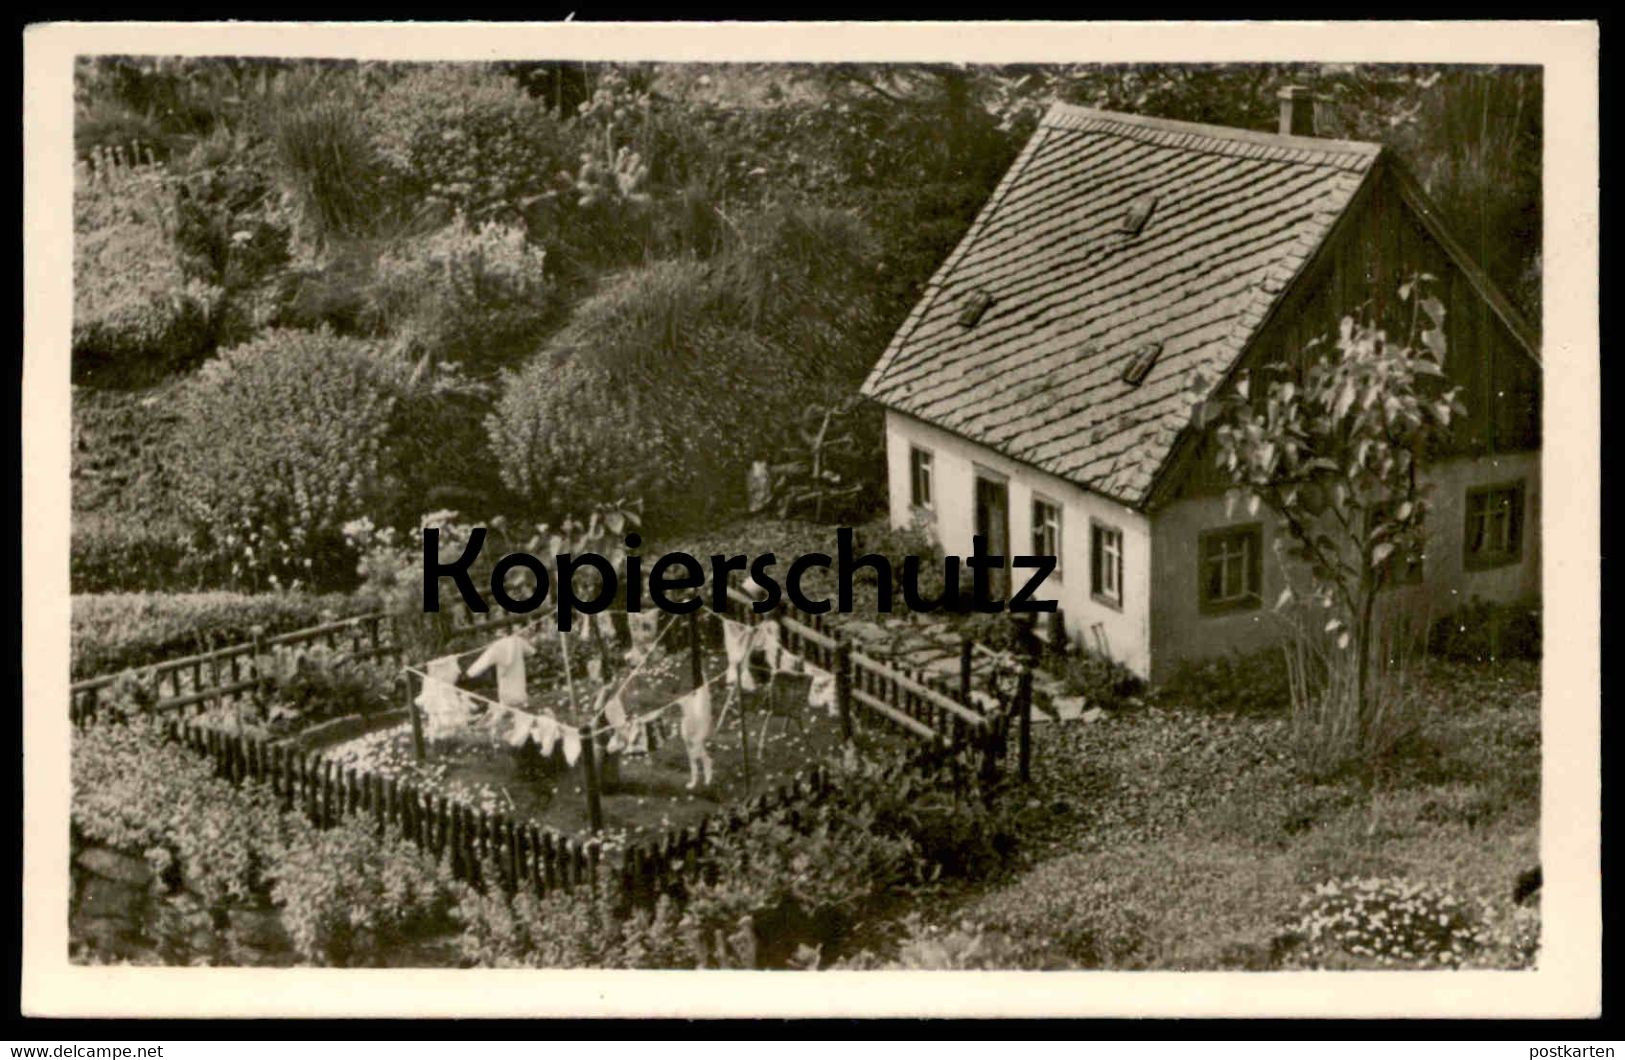 ALTE POSTKARTE OEDERAN BAUERNHAUS AUS BURKHARDTSGRÜN MINIATURPARK KLEIN-ERZGEBIRGE SACHSEN Haus Miniature Park Postcard - Oederan